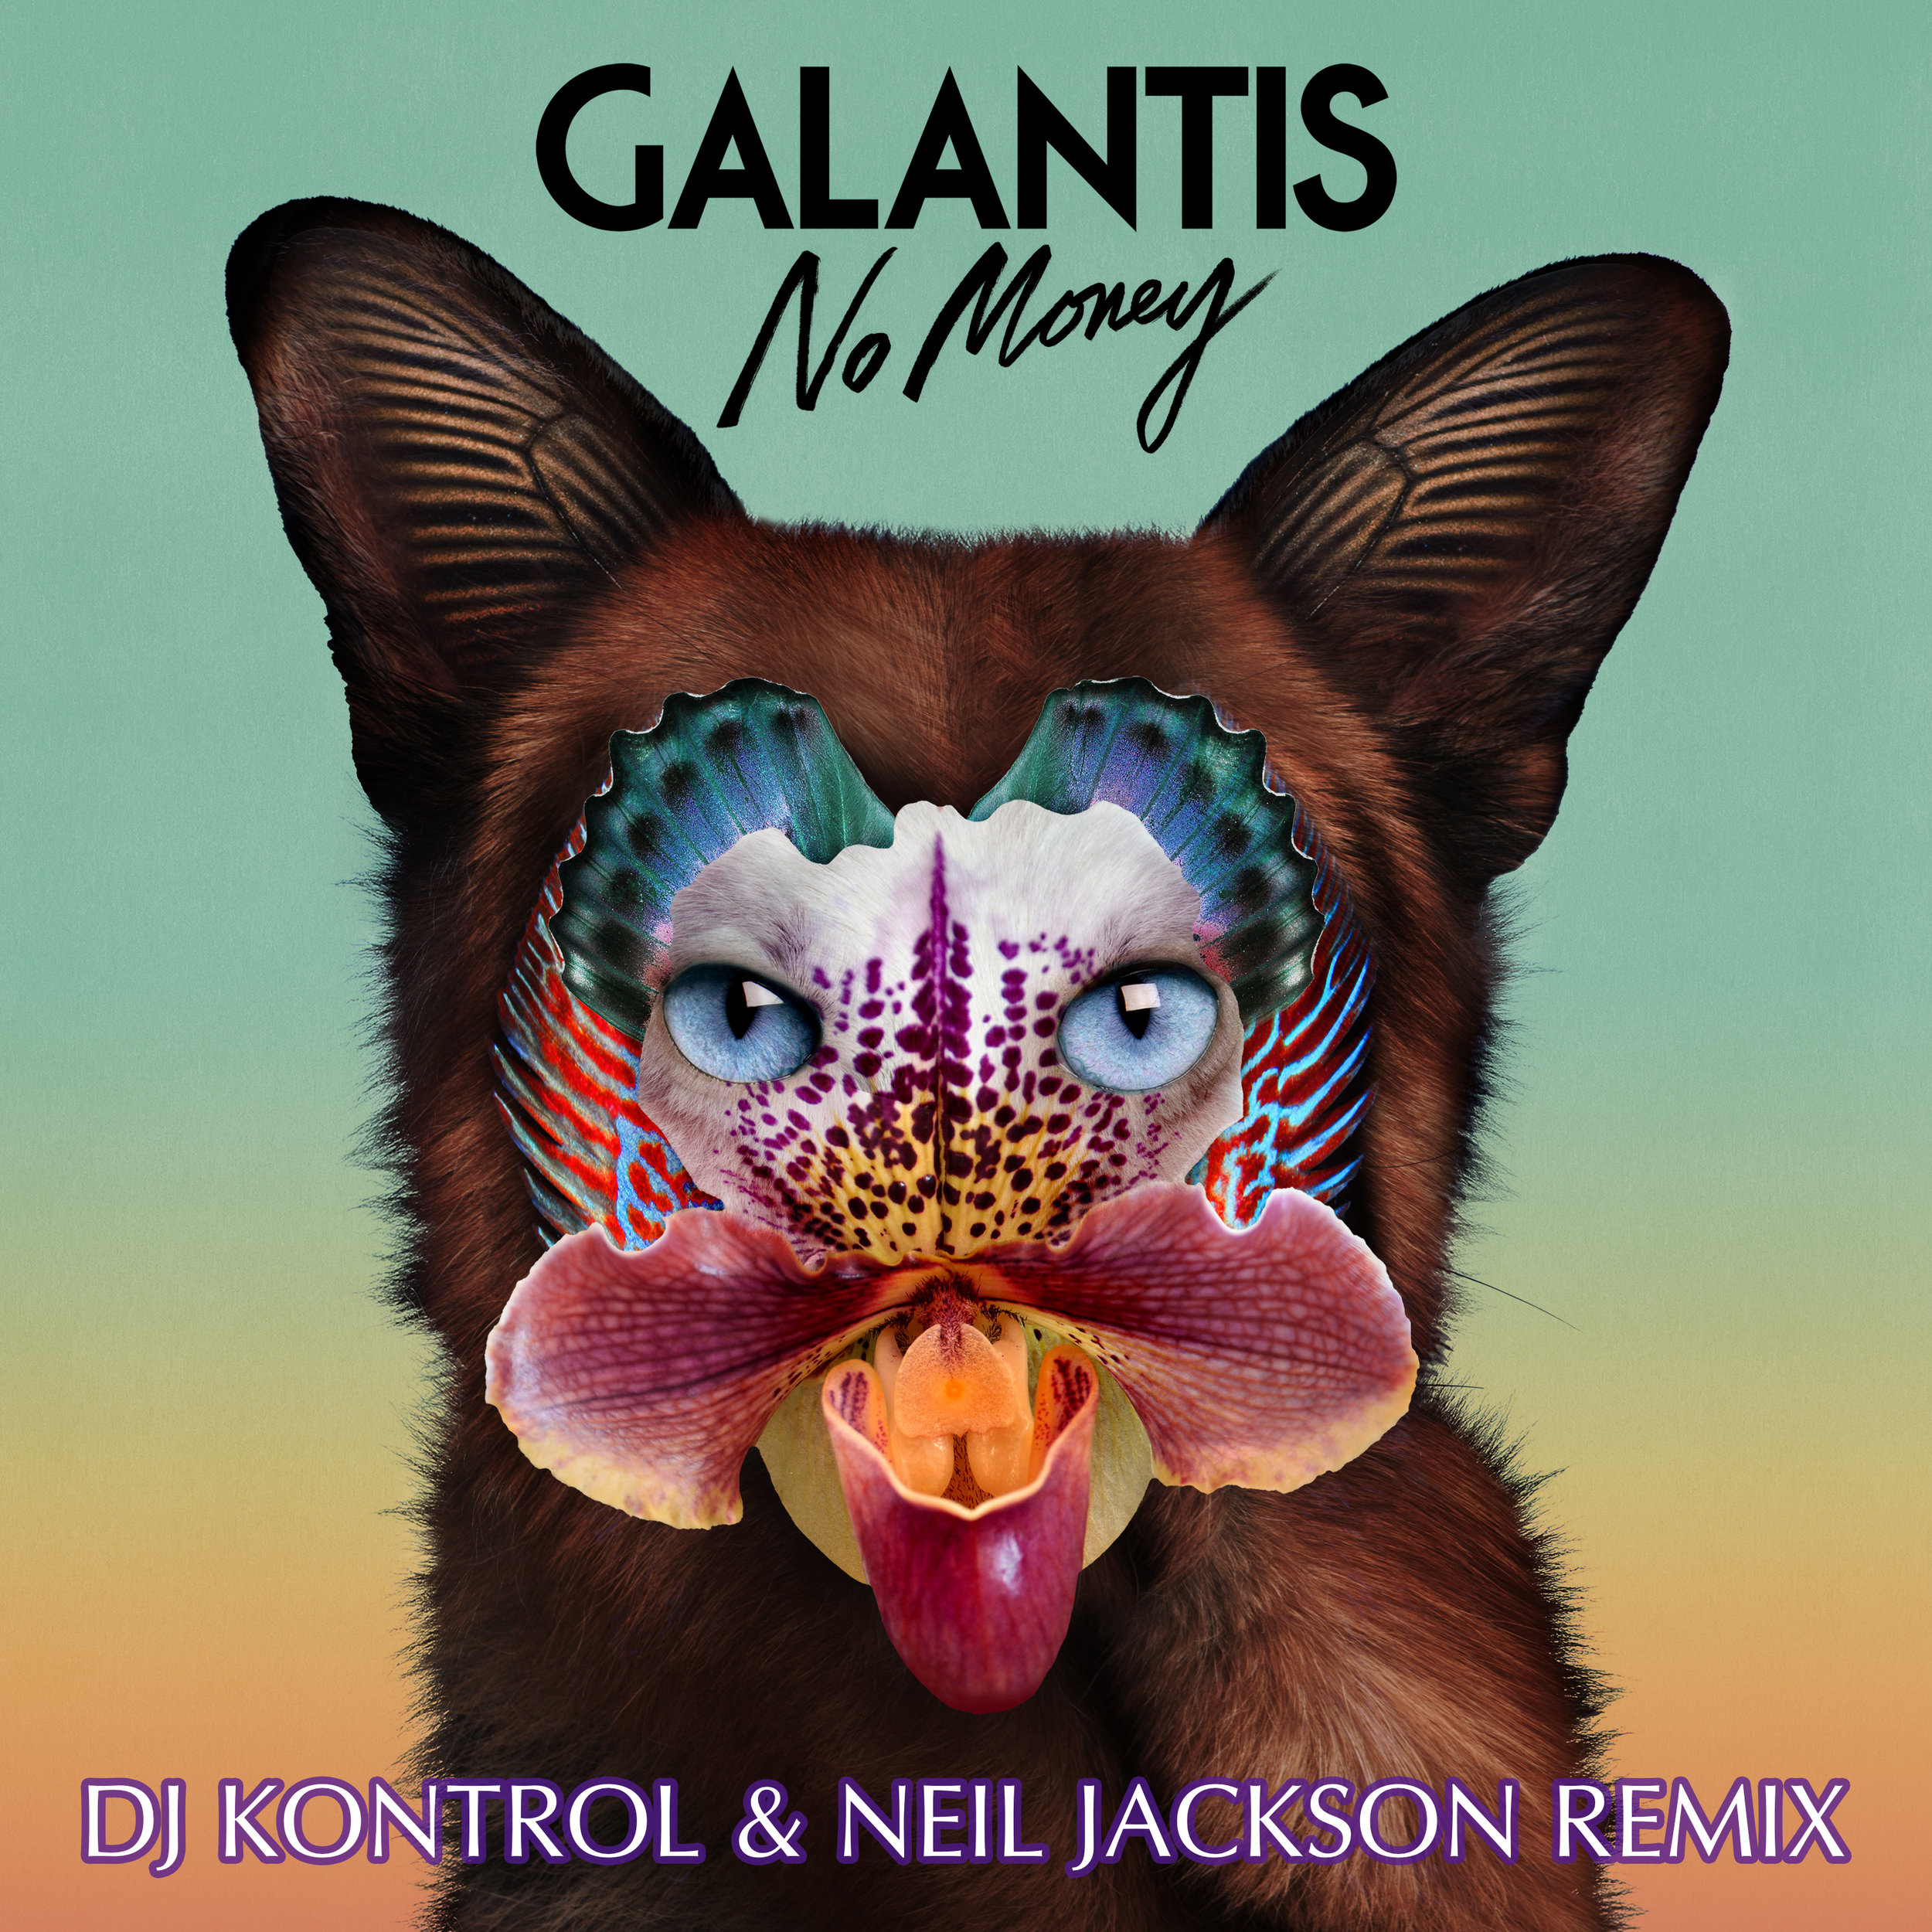 Galantis - No Money (DJ Kontrol & Neil Jackson Remix)